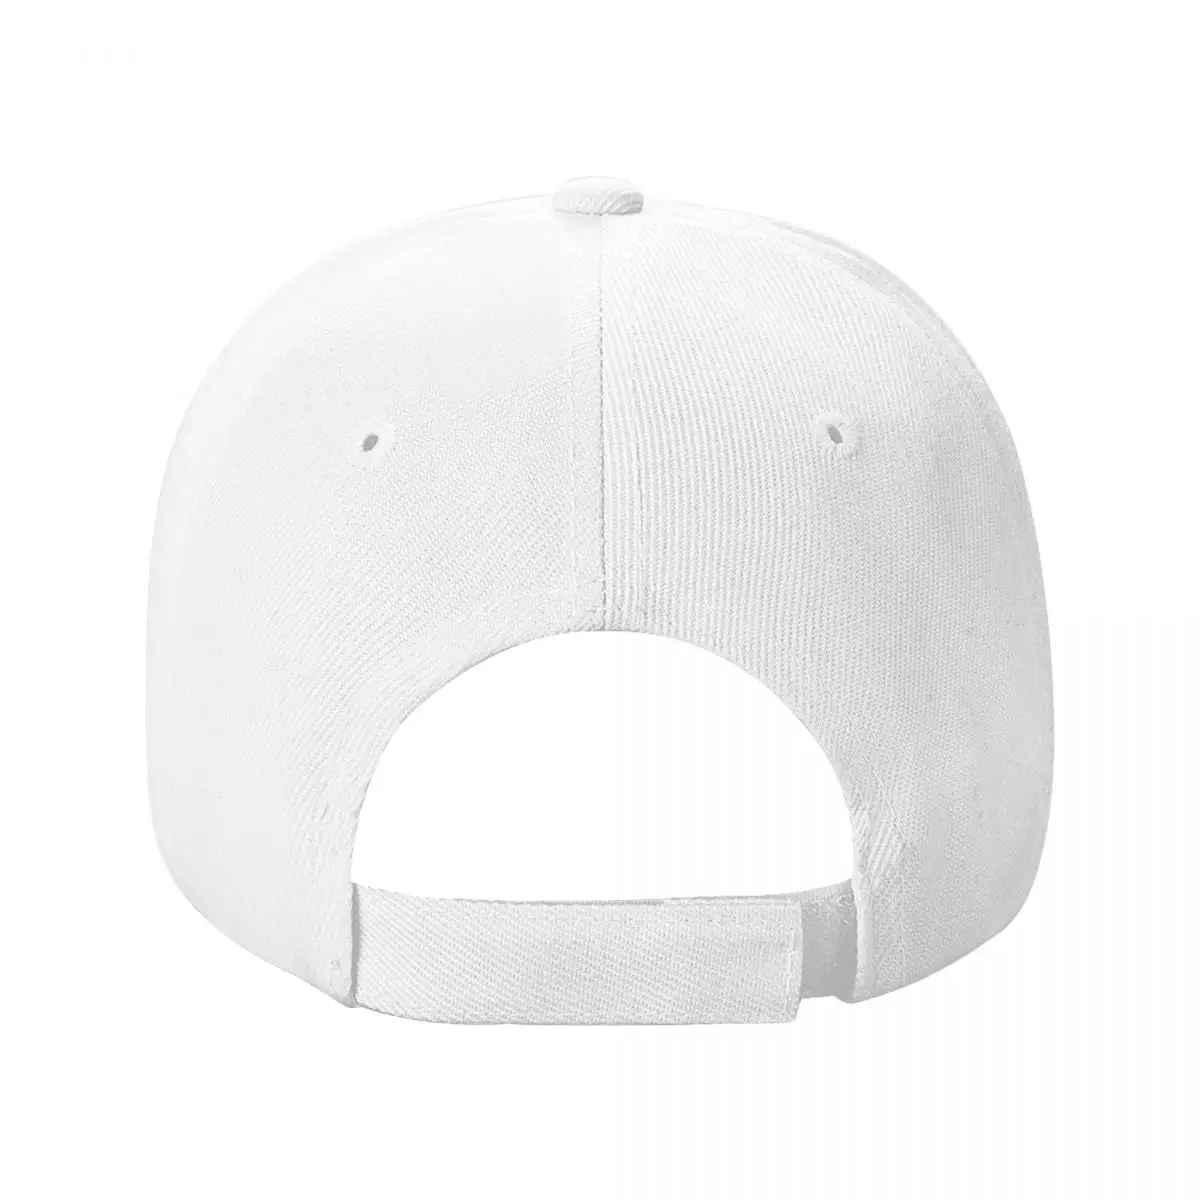 Бестселлер-Бейсбольная кепка Stone Temple Pilots, брендовые мужские кепки, элегантные женские шляпы, мужские кепки. 3